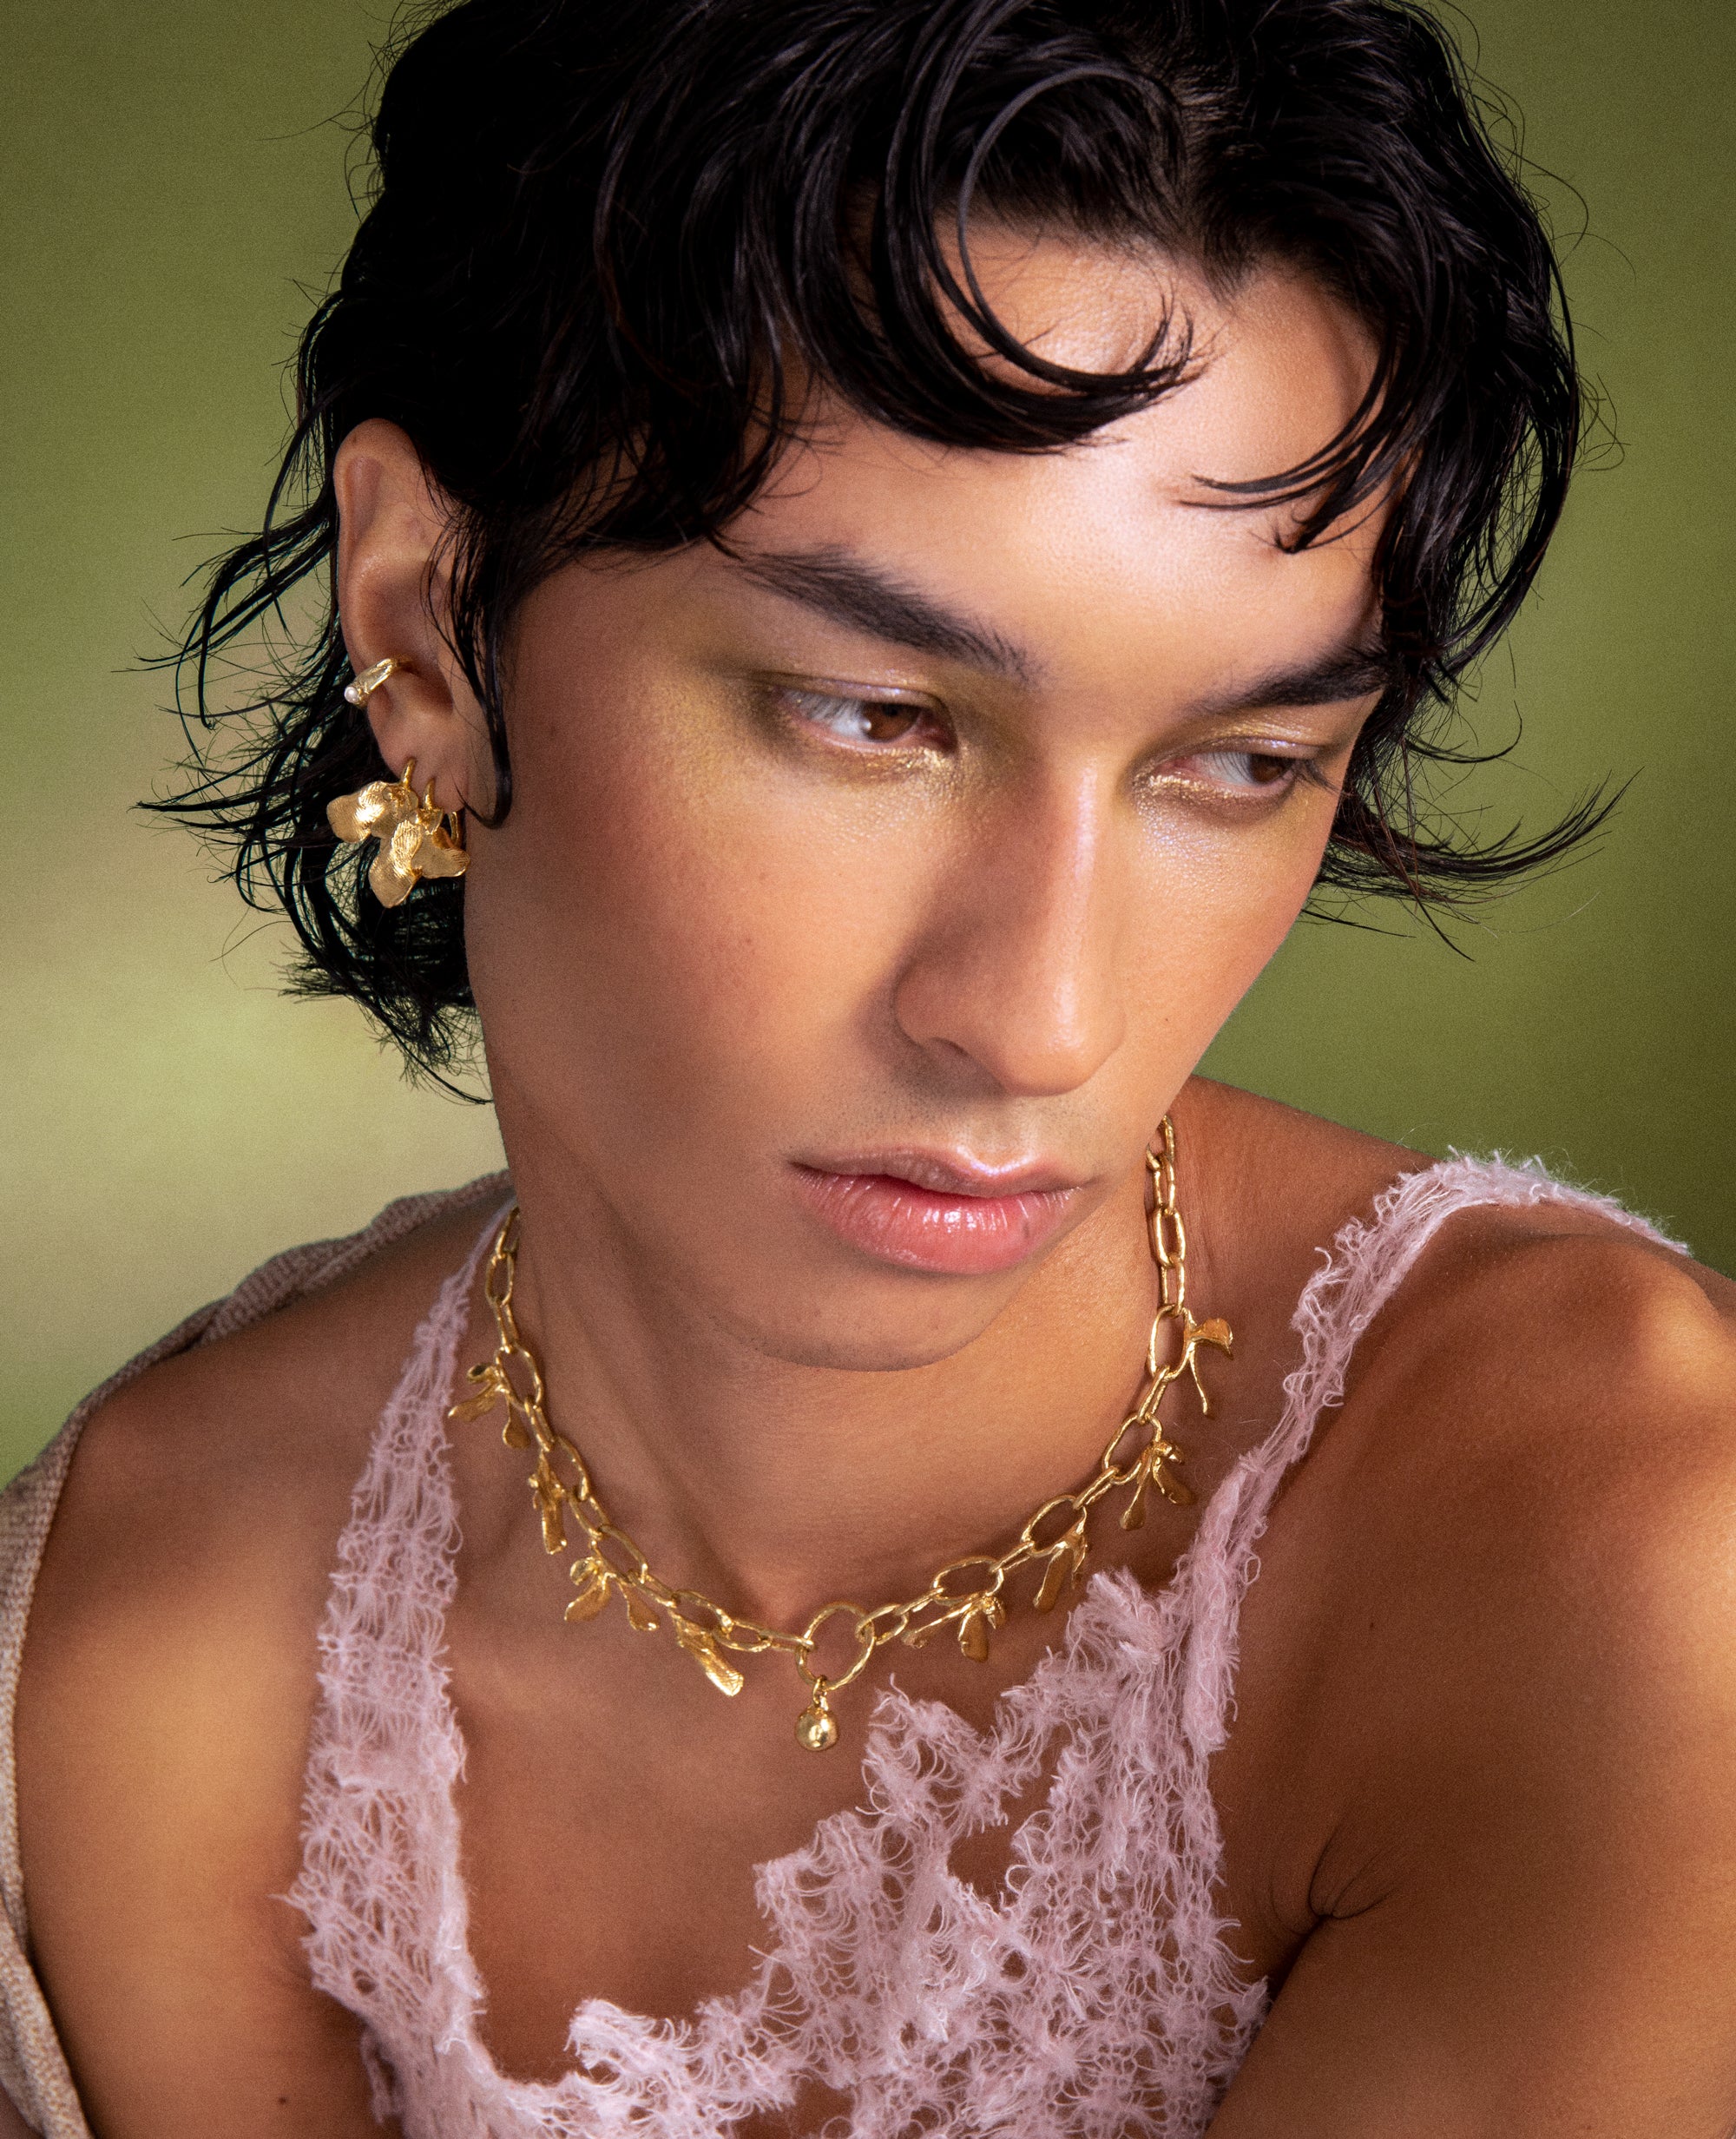 GERMINATI // boucles d'oreilles en or - bijoux ORA-C - bijoux faits à la main par Caroline Pham, designer indépendante basée à Montréal